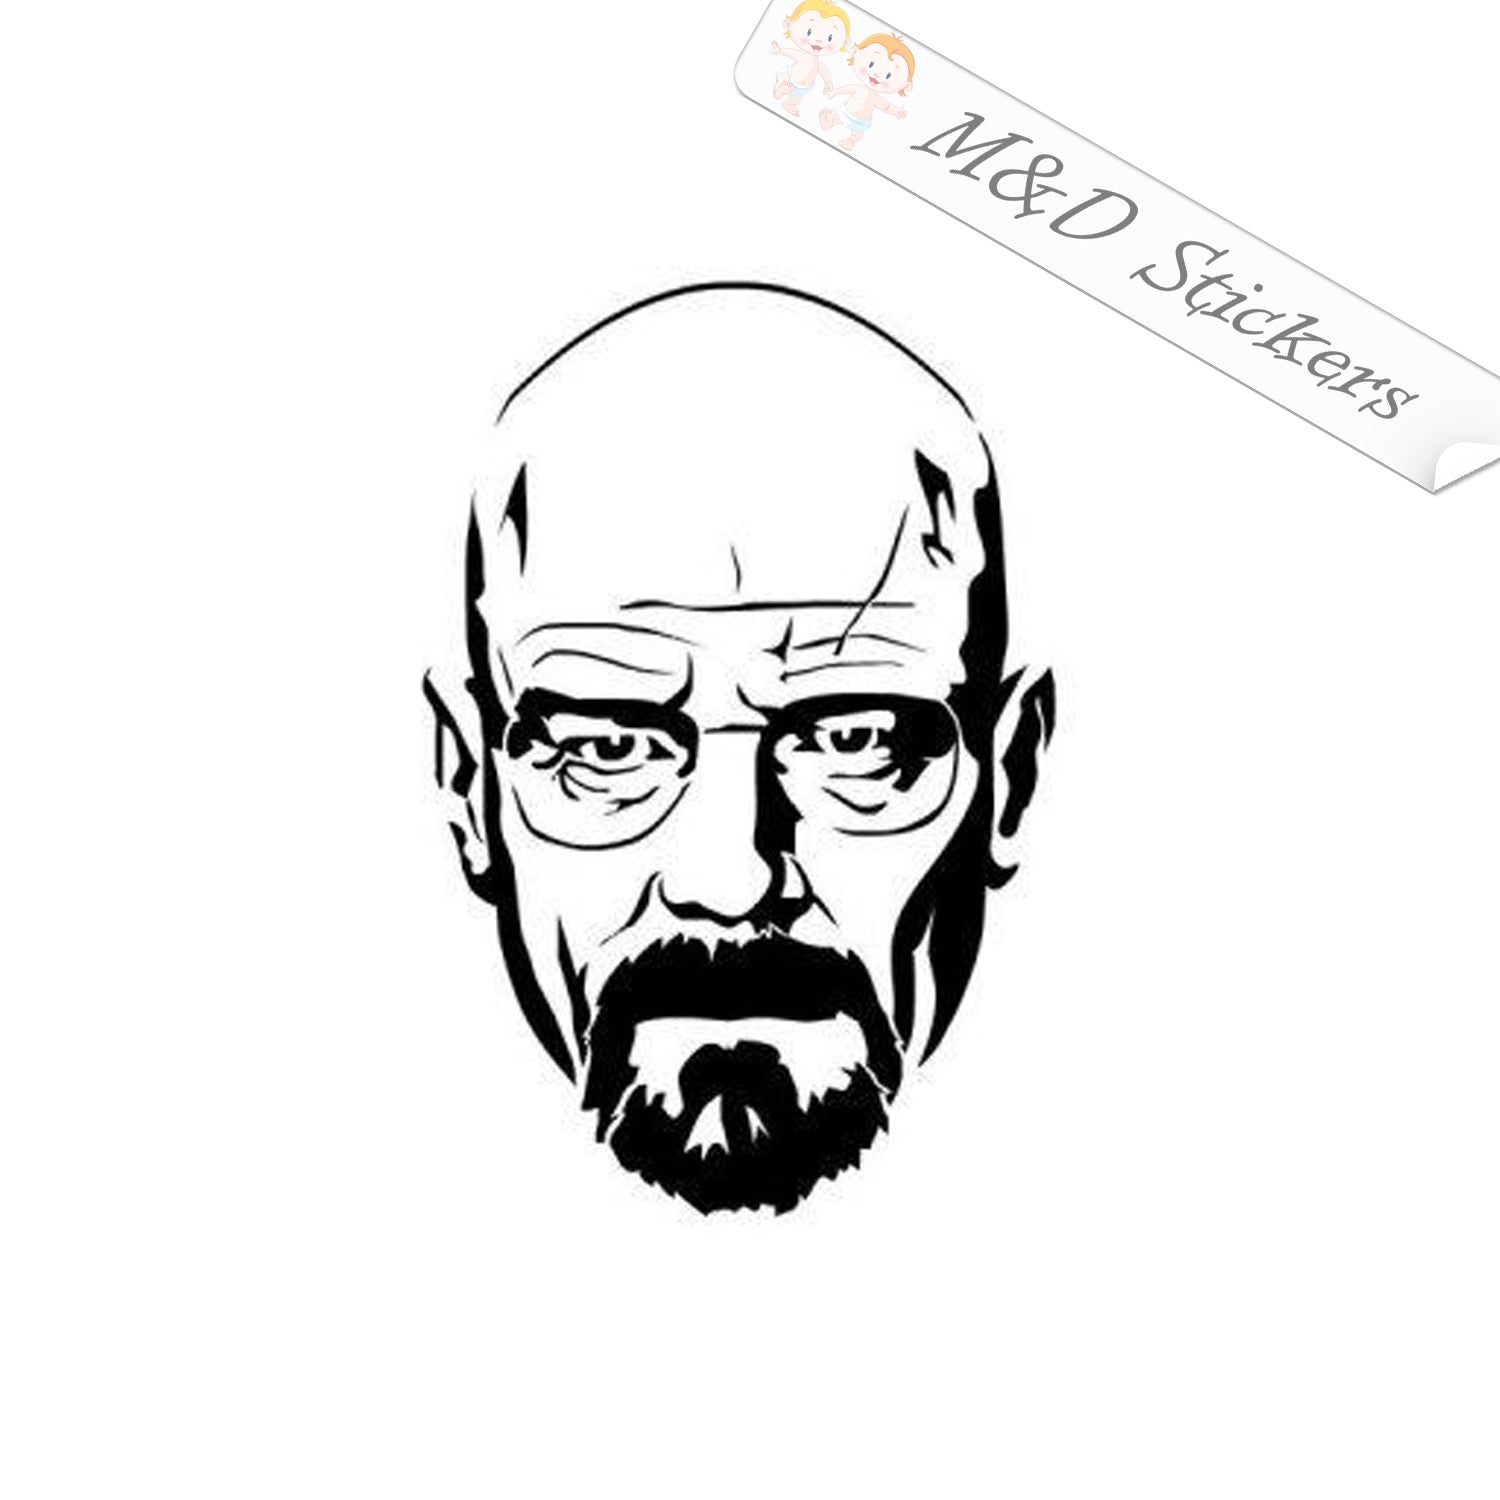 Breaking Bad (Heisenberg (Walter White)) speed drawing Portrait Drawings /  Sketch, Paintings by Stefan Pabst - Artist.com